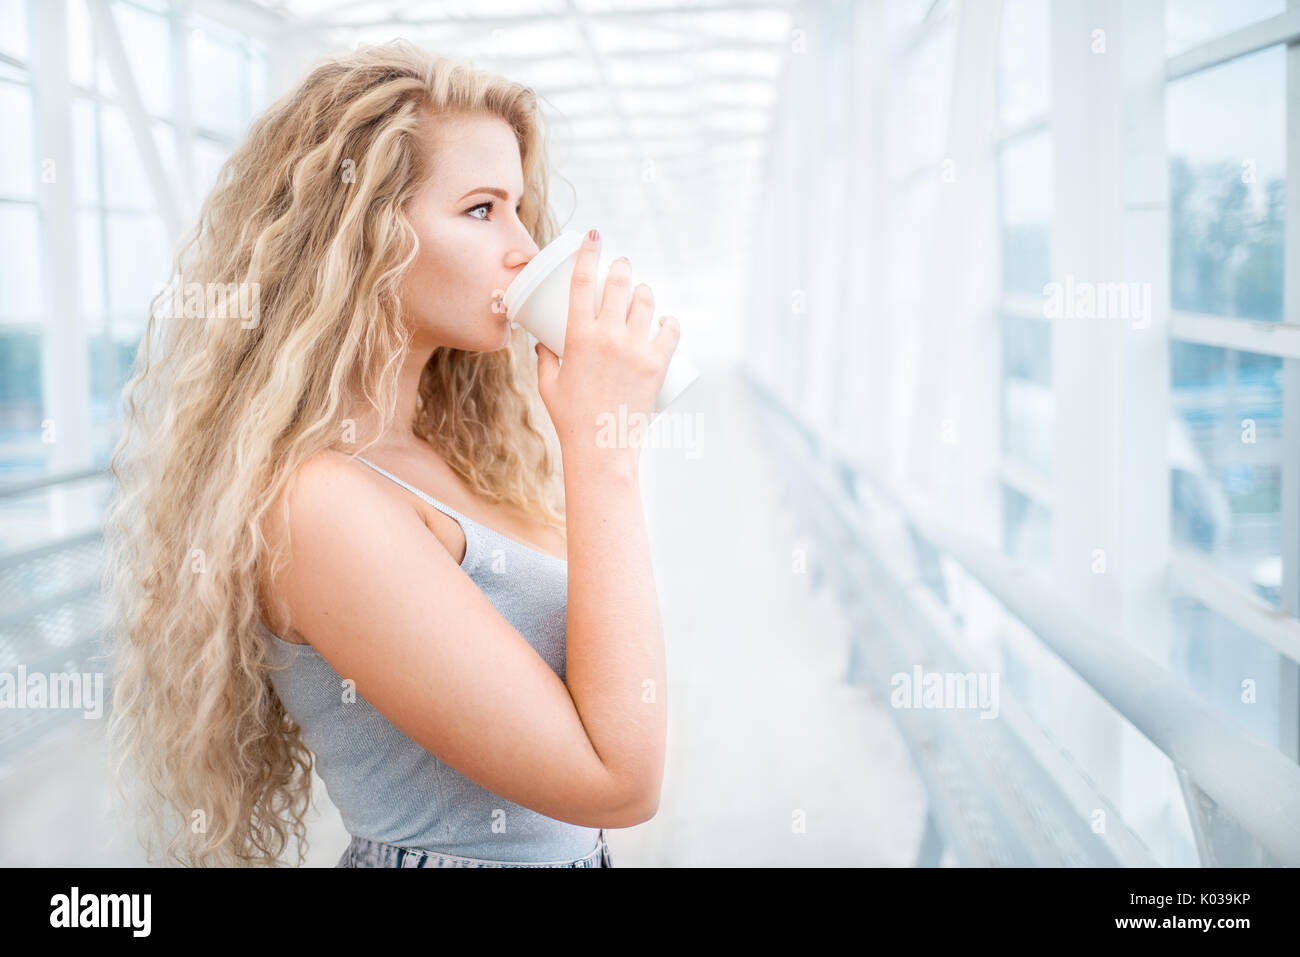 Schöne junge Frau mit langen lockigen Haaren, ein Take away Kaffeetasse halten und stehen auf der Brücke gegen städtischen Hintergrund. Stockfoto